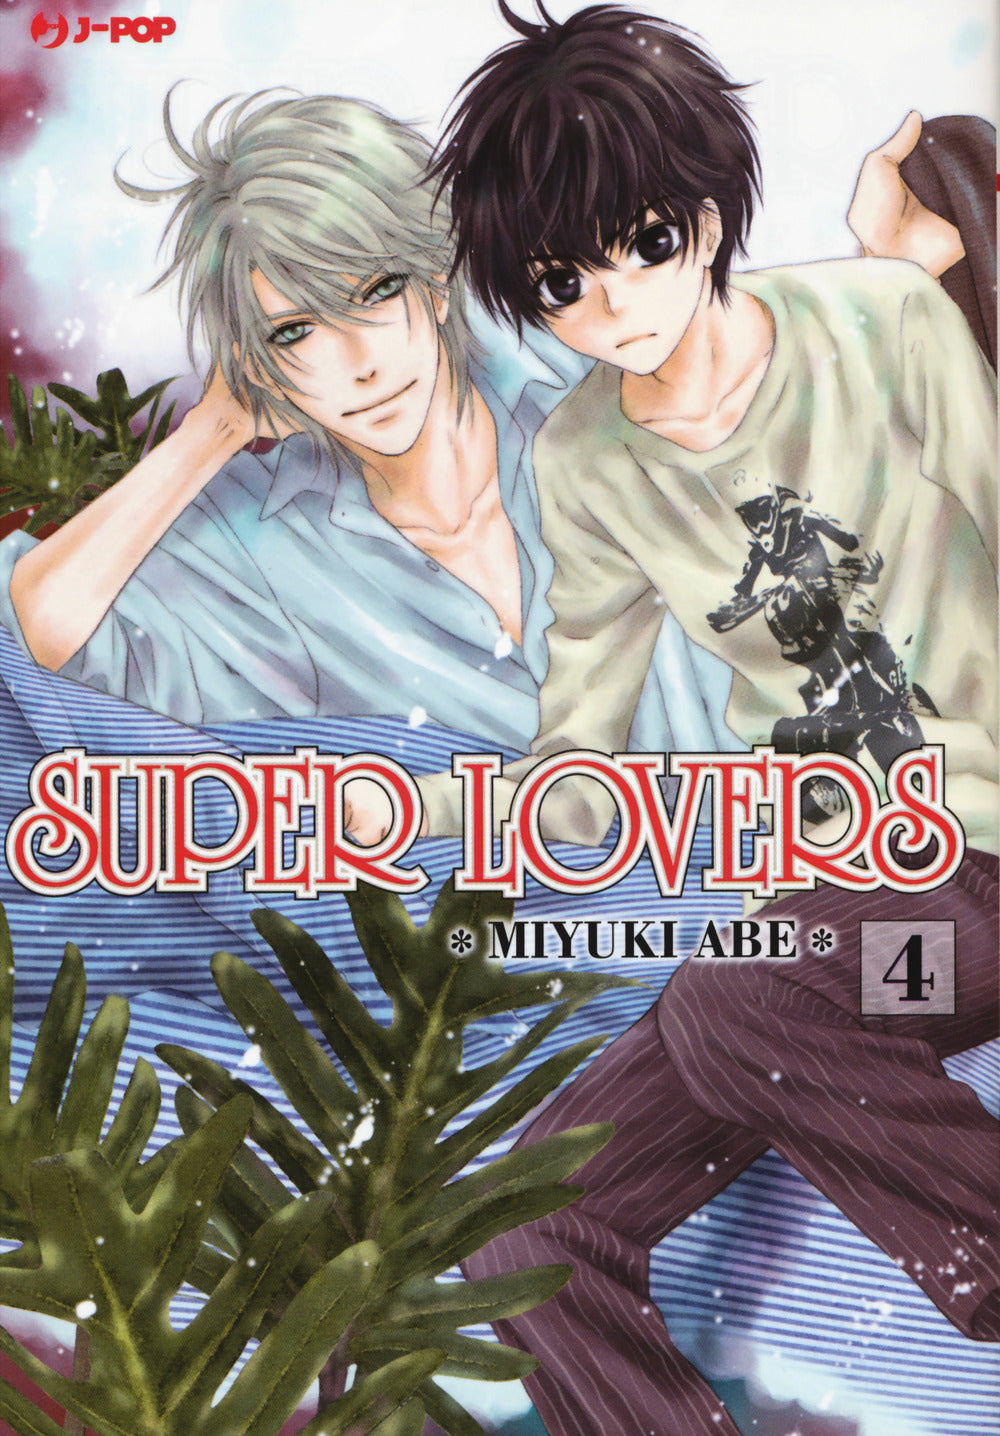 Super lovers. Vol. 4.